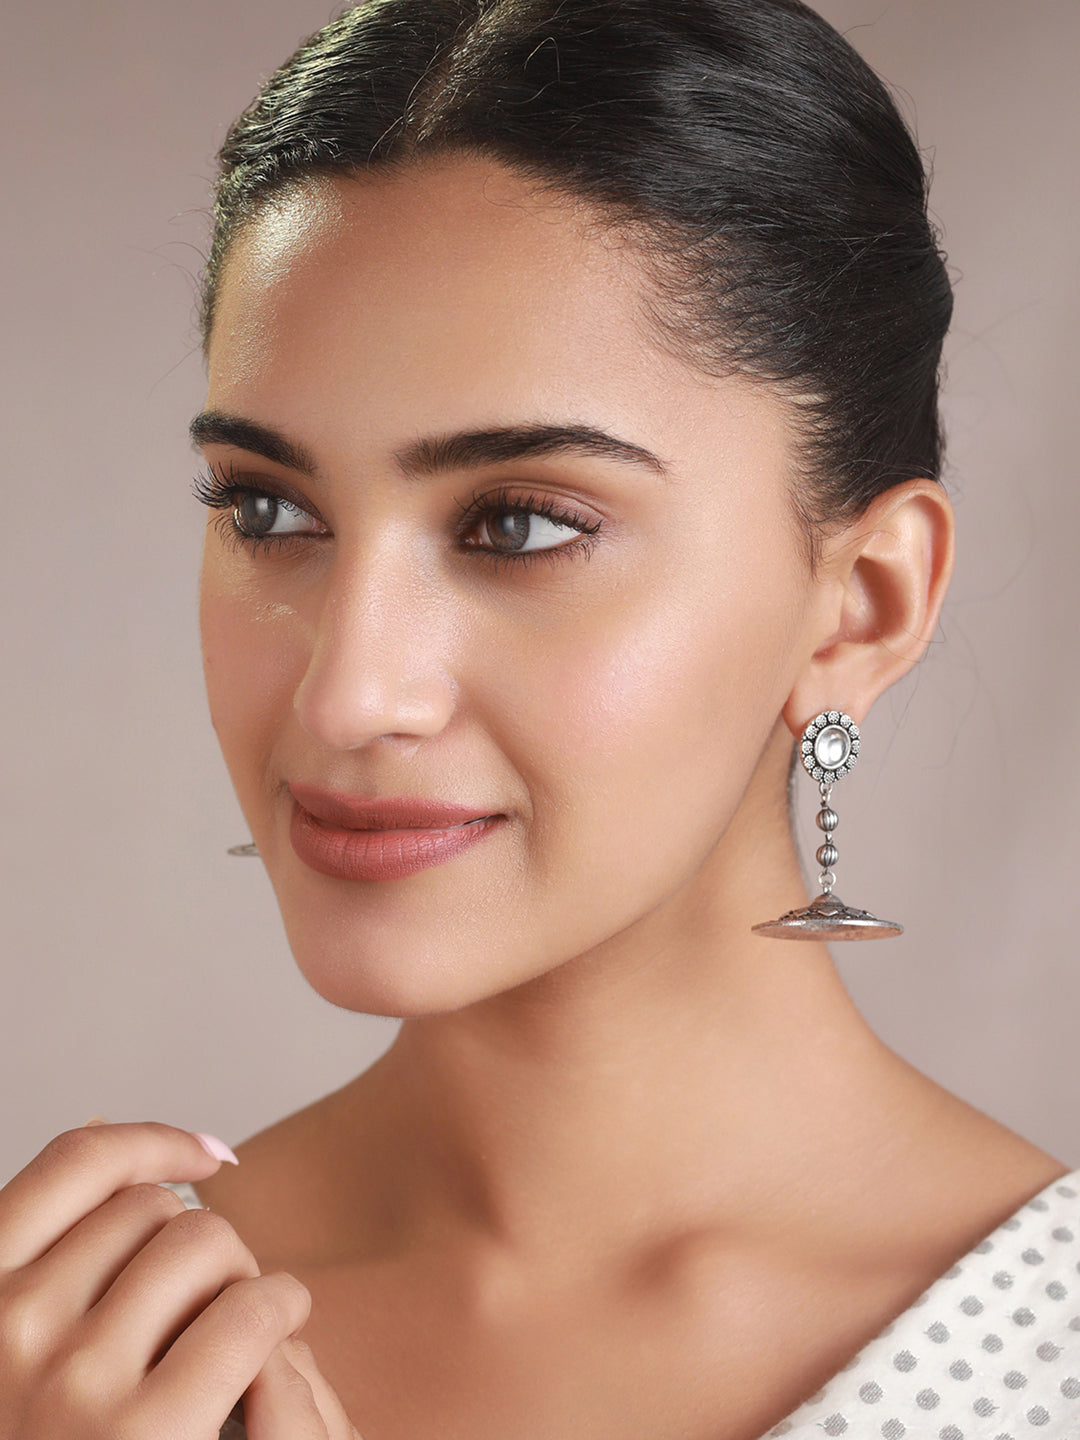 Priyaasi Round Studded Floral Motif Oxidised Silver Earrings